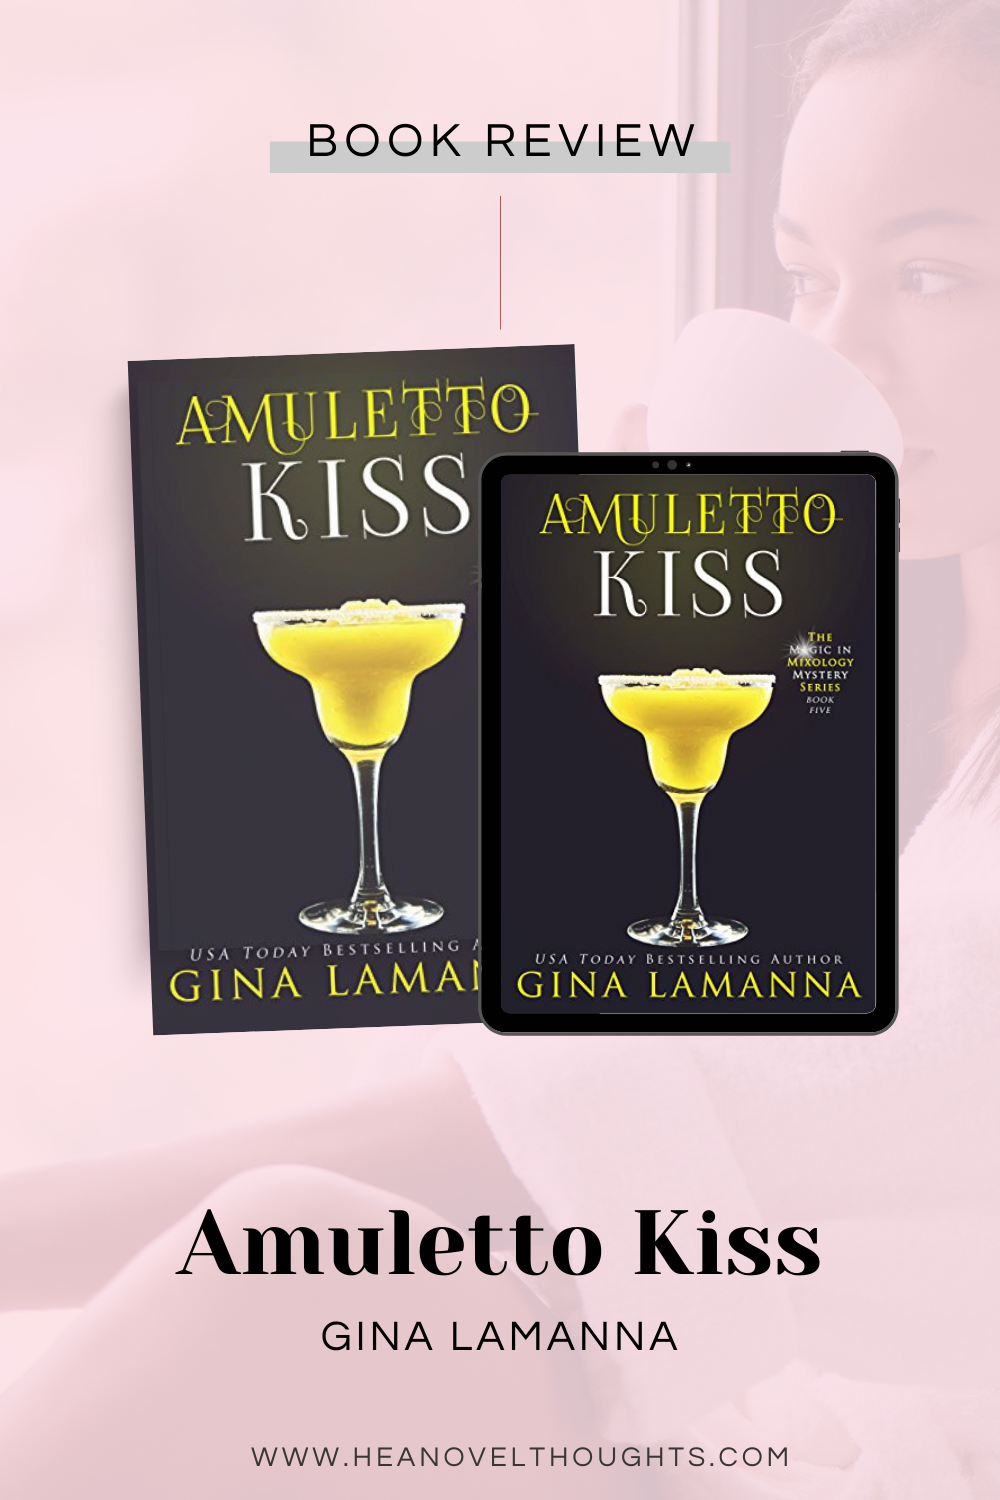 Amuletto Kiss by Gina LaManna